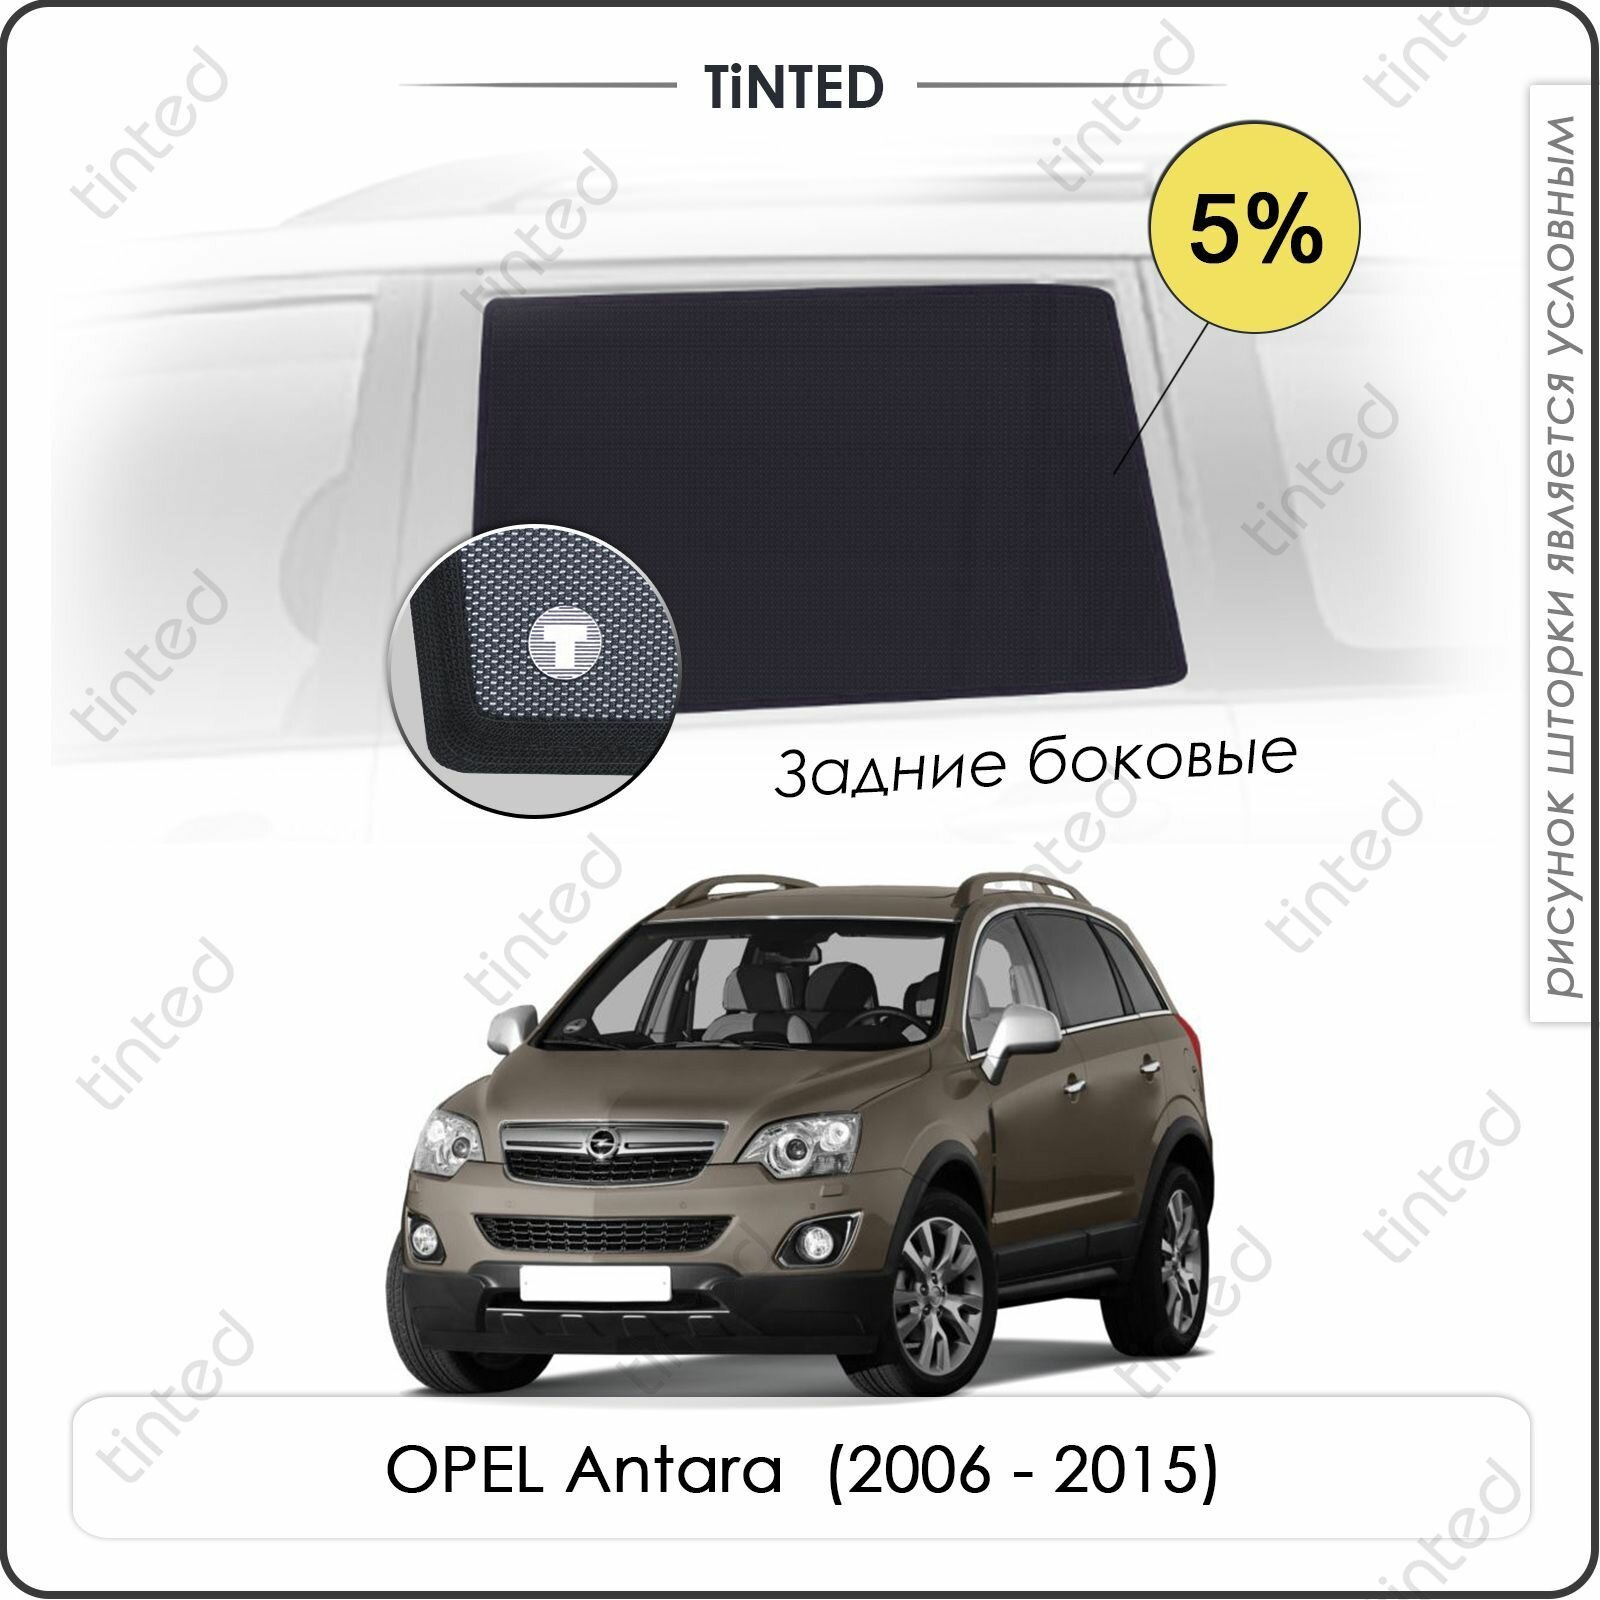 Шторки на автомобиль солнцезащитные OPEL Antara Кроссовер 5дв. (2006 - 2015) на передние двери 5% сетки от солнца в машину опель антара Каркасные автошторки Premium